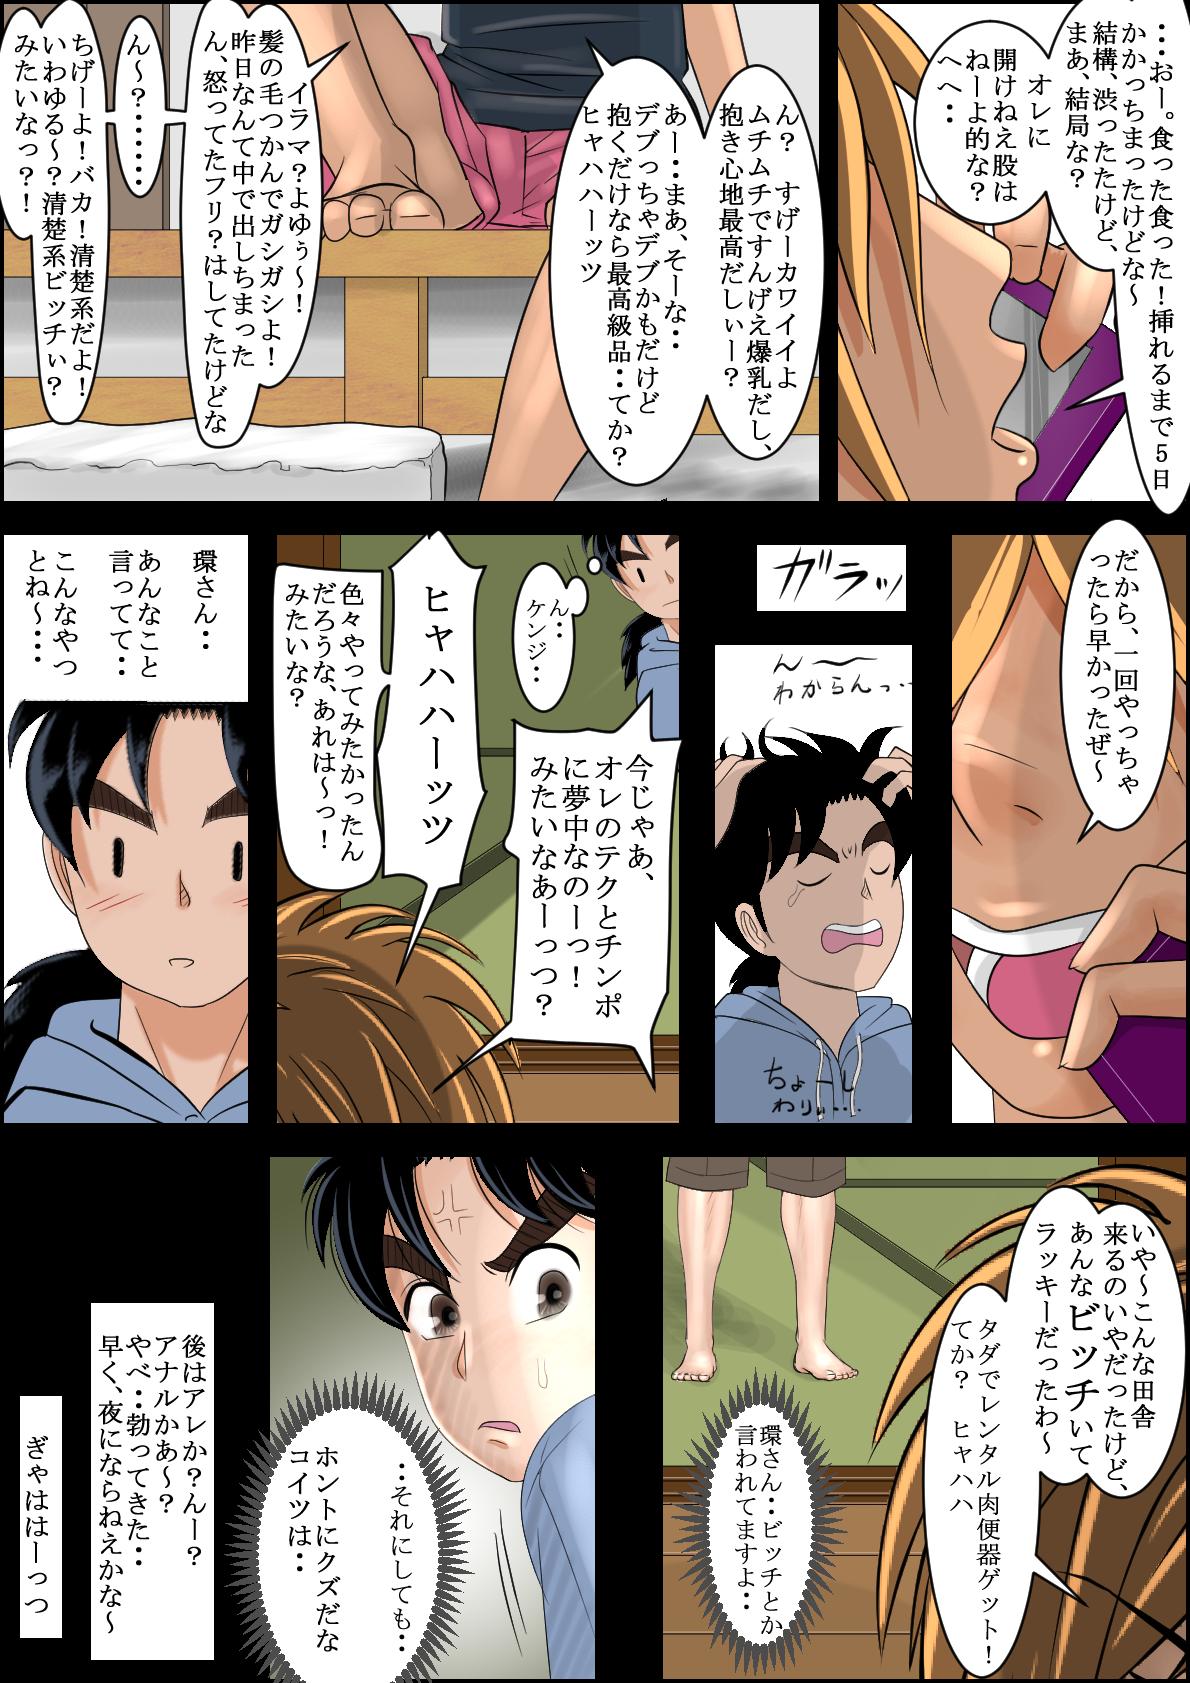 Behind Seisokei Bitch no Jikenbo - Kindaichi shounen no jikenbo Retro - Page 8